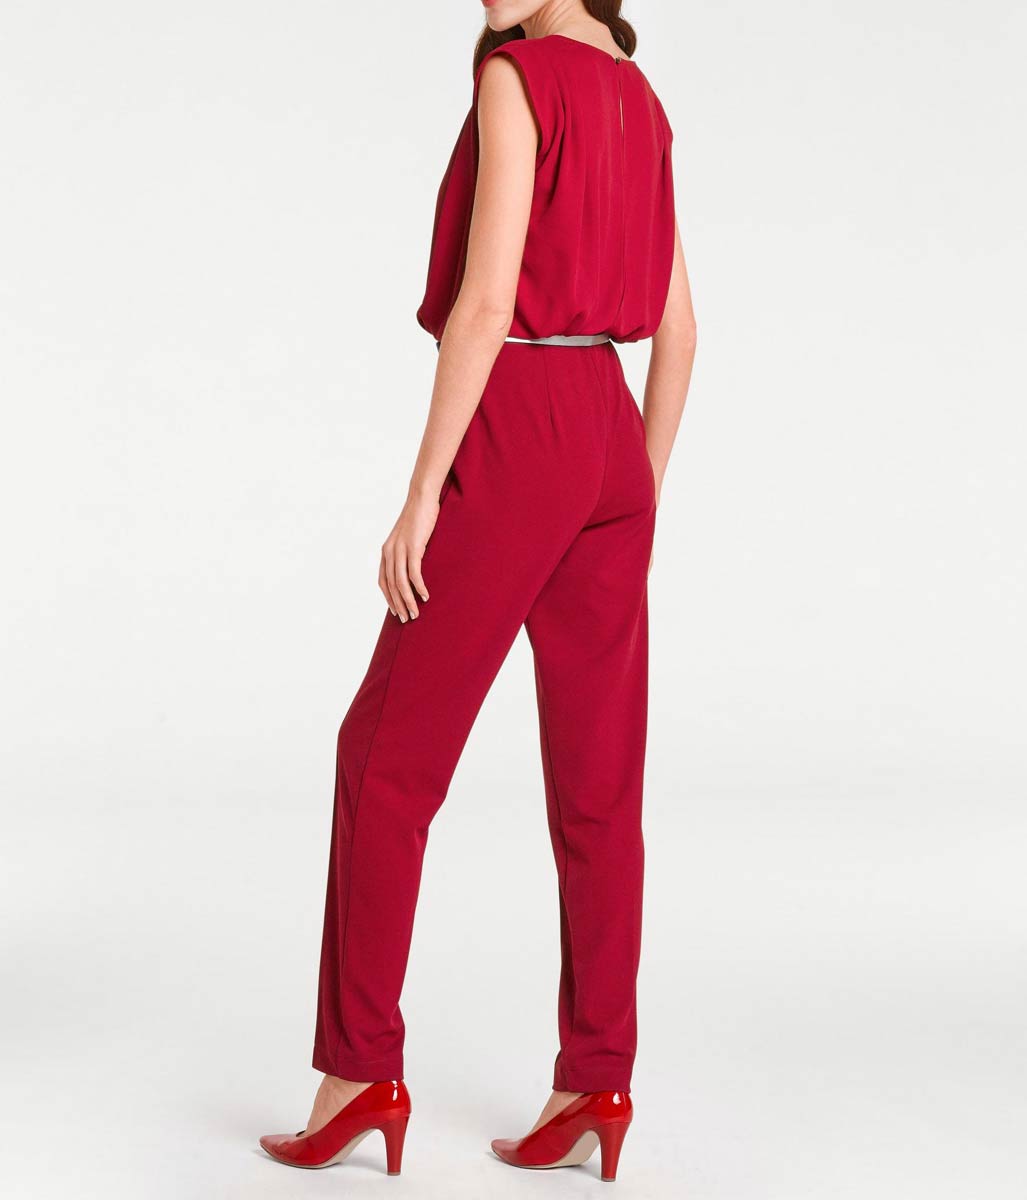 Ashley Brooke Damen Designer-Overall, rot